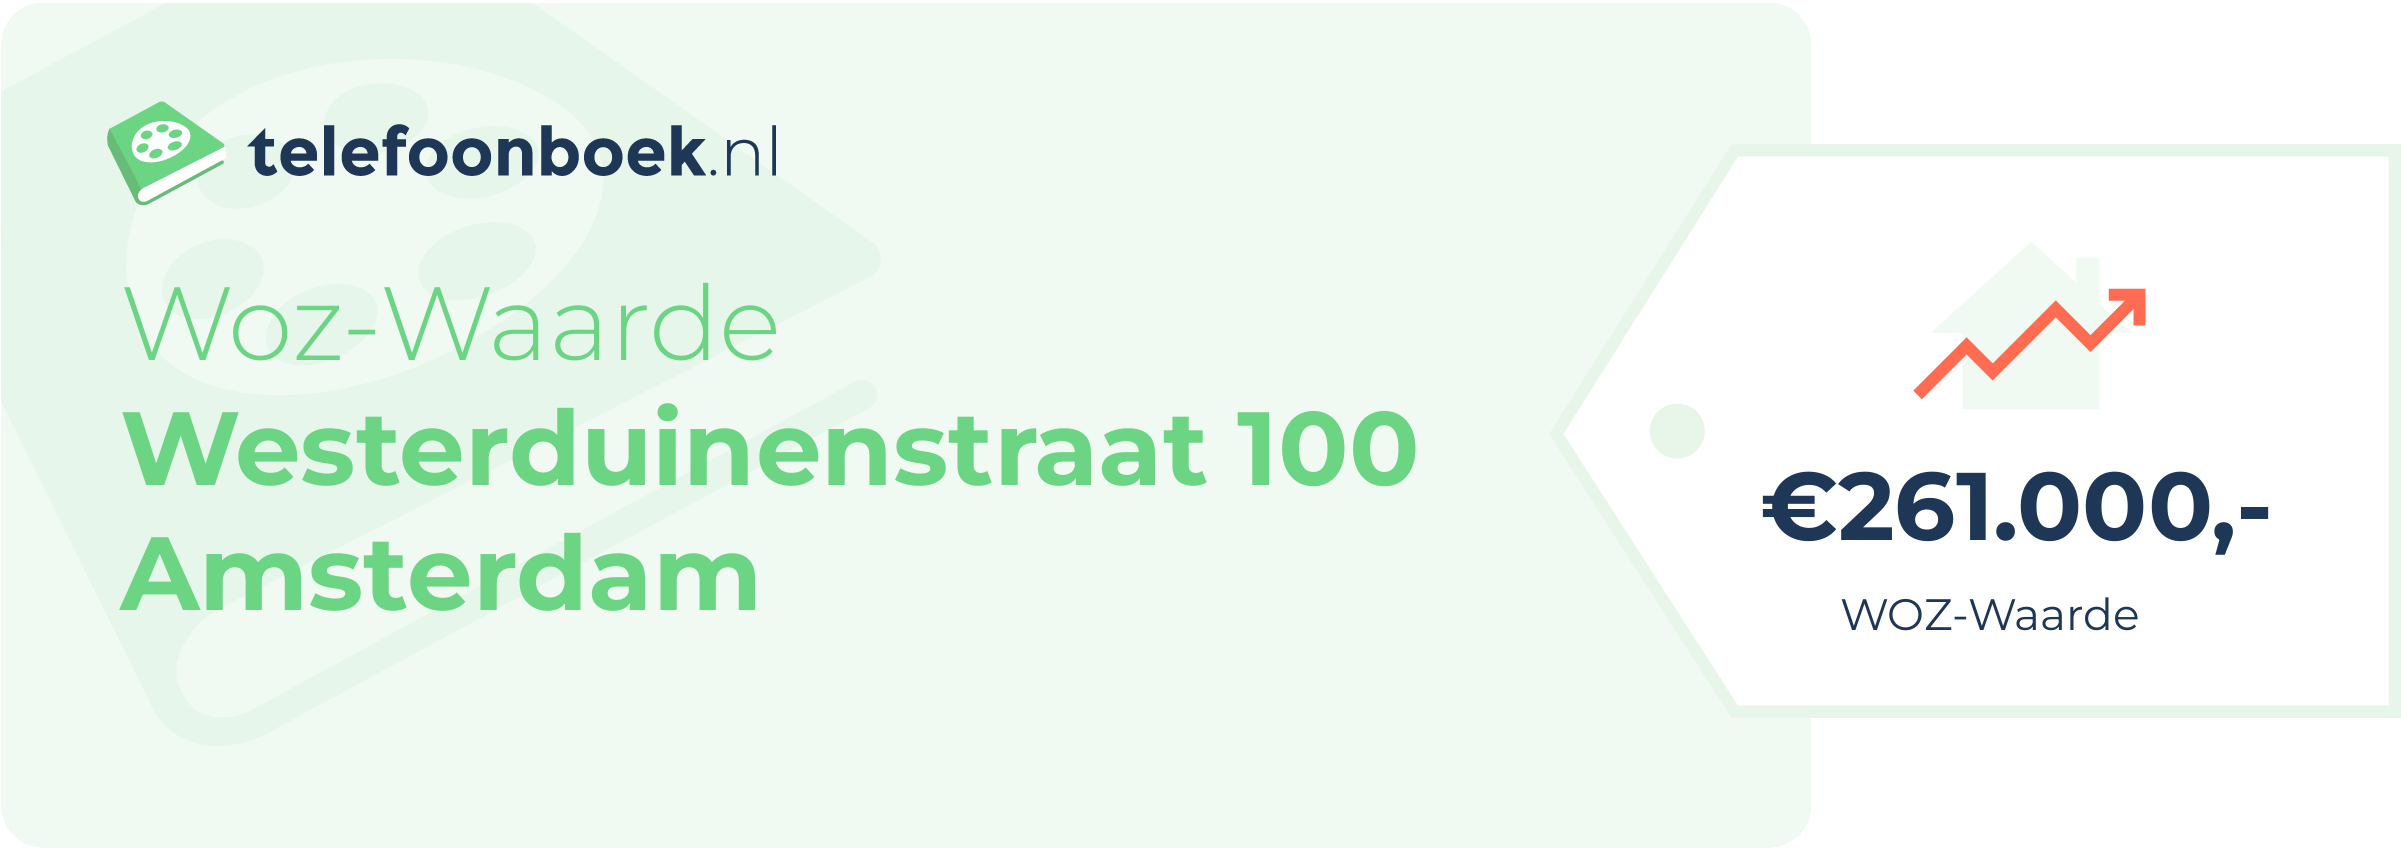 WOZ-waarde Westerduinenstraat 100 Amsterdam